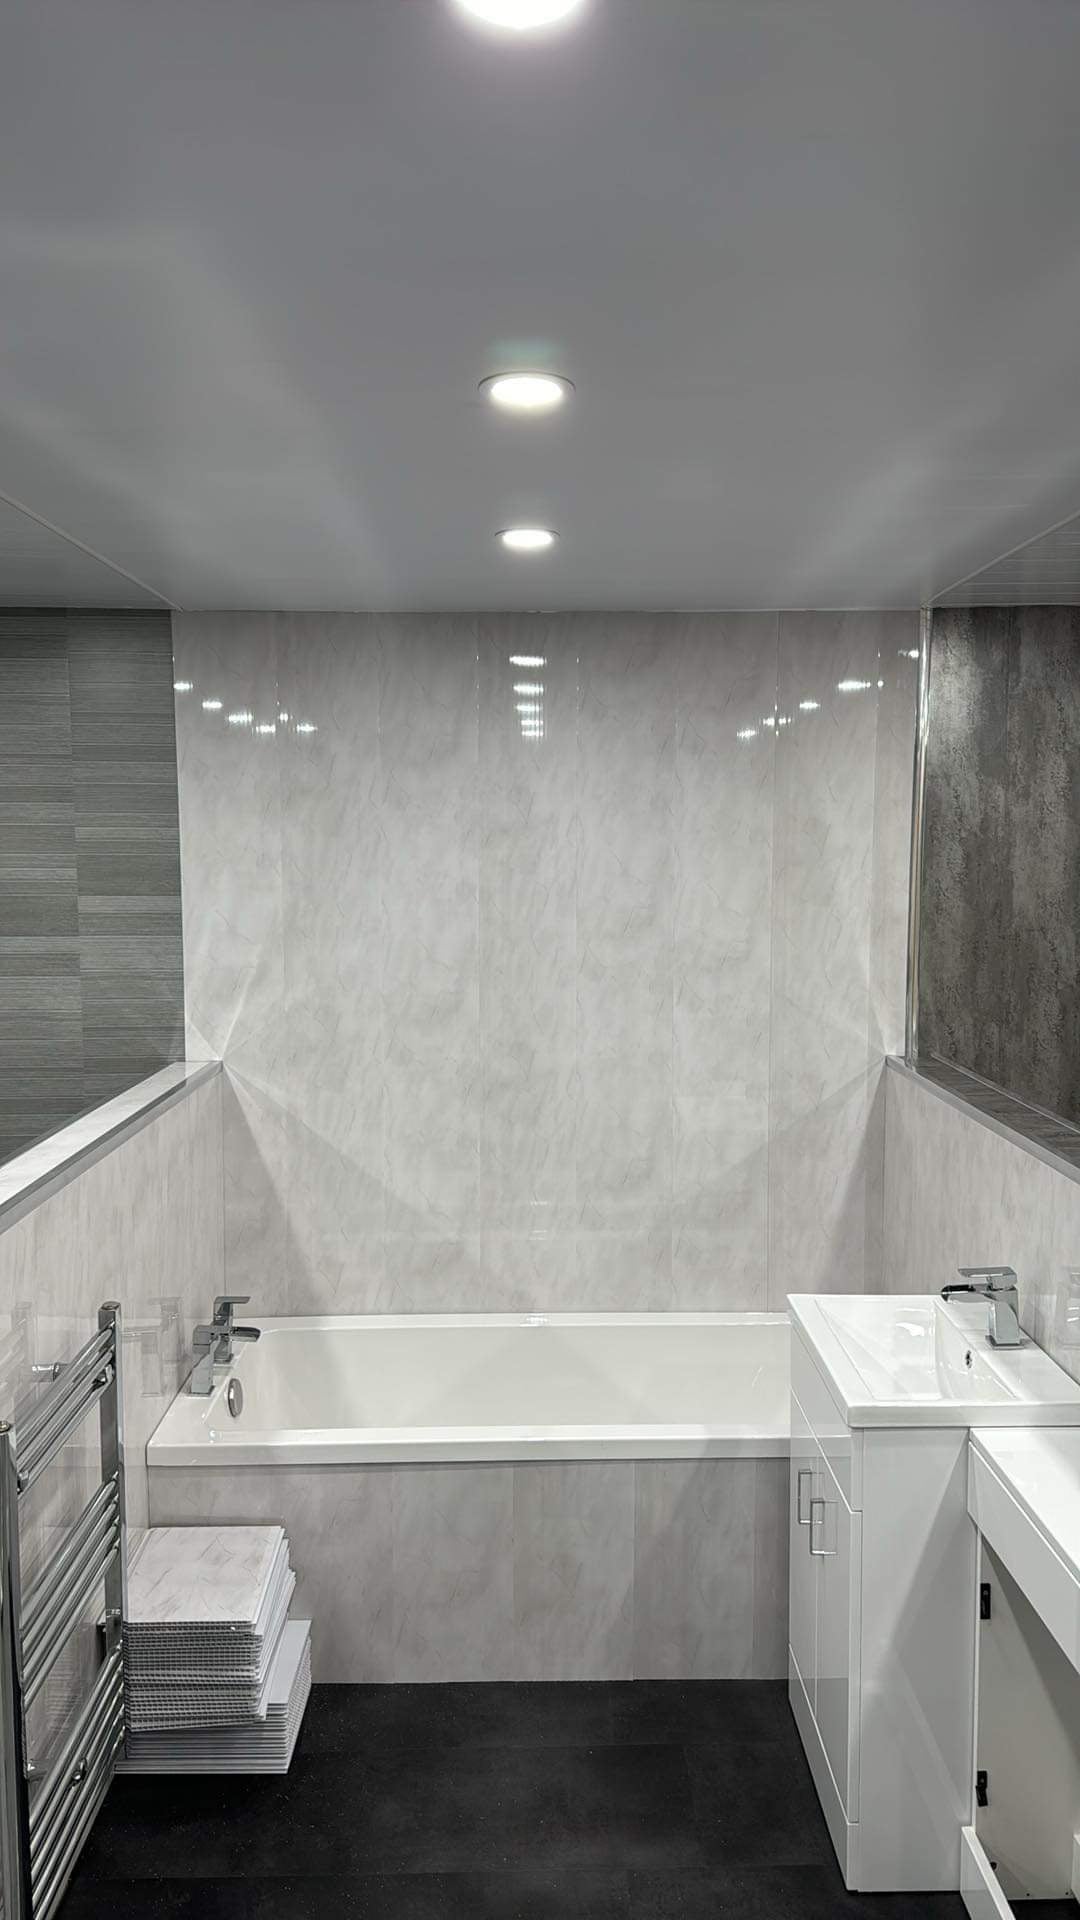 Wet Wall & Bathroom Suites